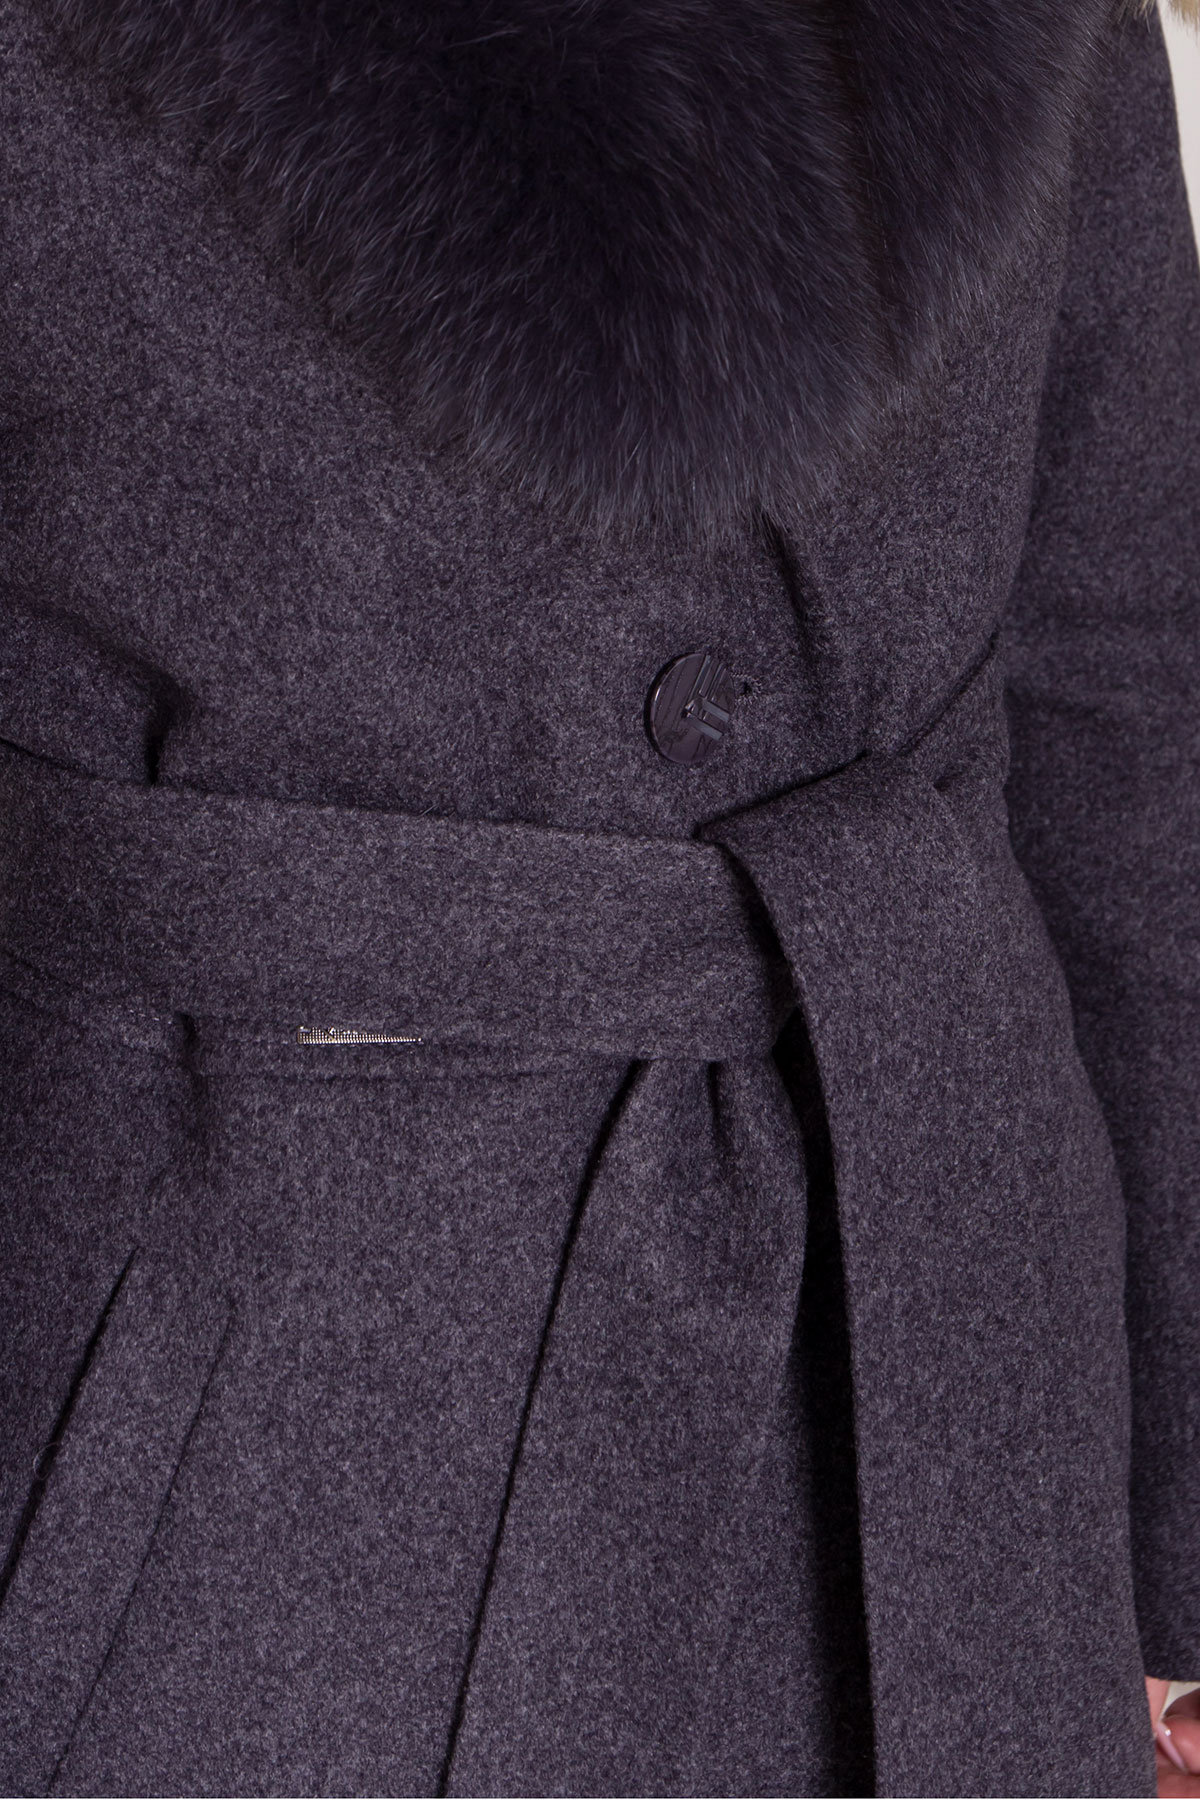 Зимнее пальто с натуральным меховым воротником Габриэлла 8214 АРТ. 44229 Цвет: Т.синий 543 - фото 6, интернет магазин tm-modus.ru